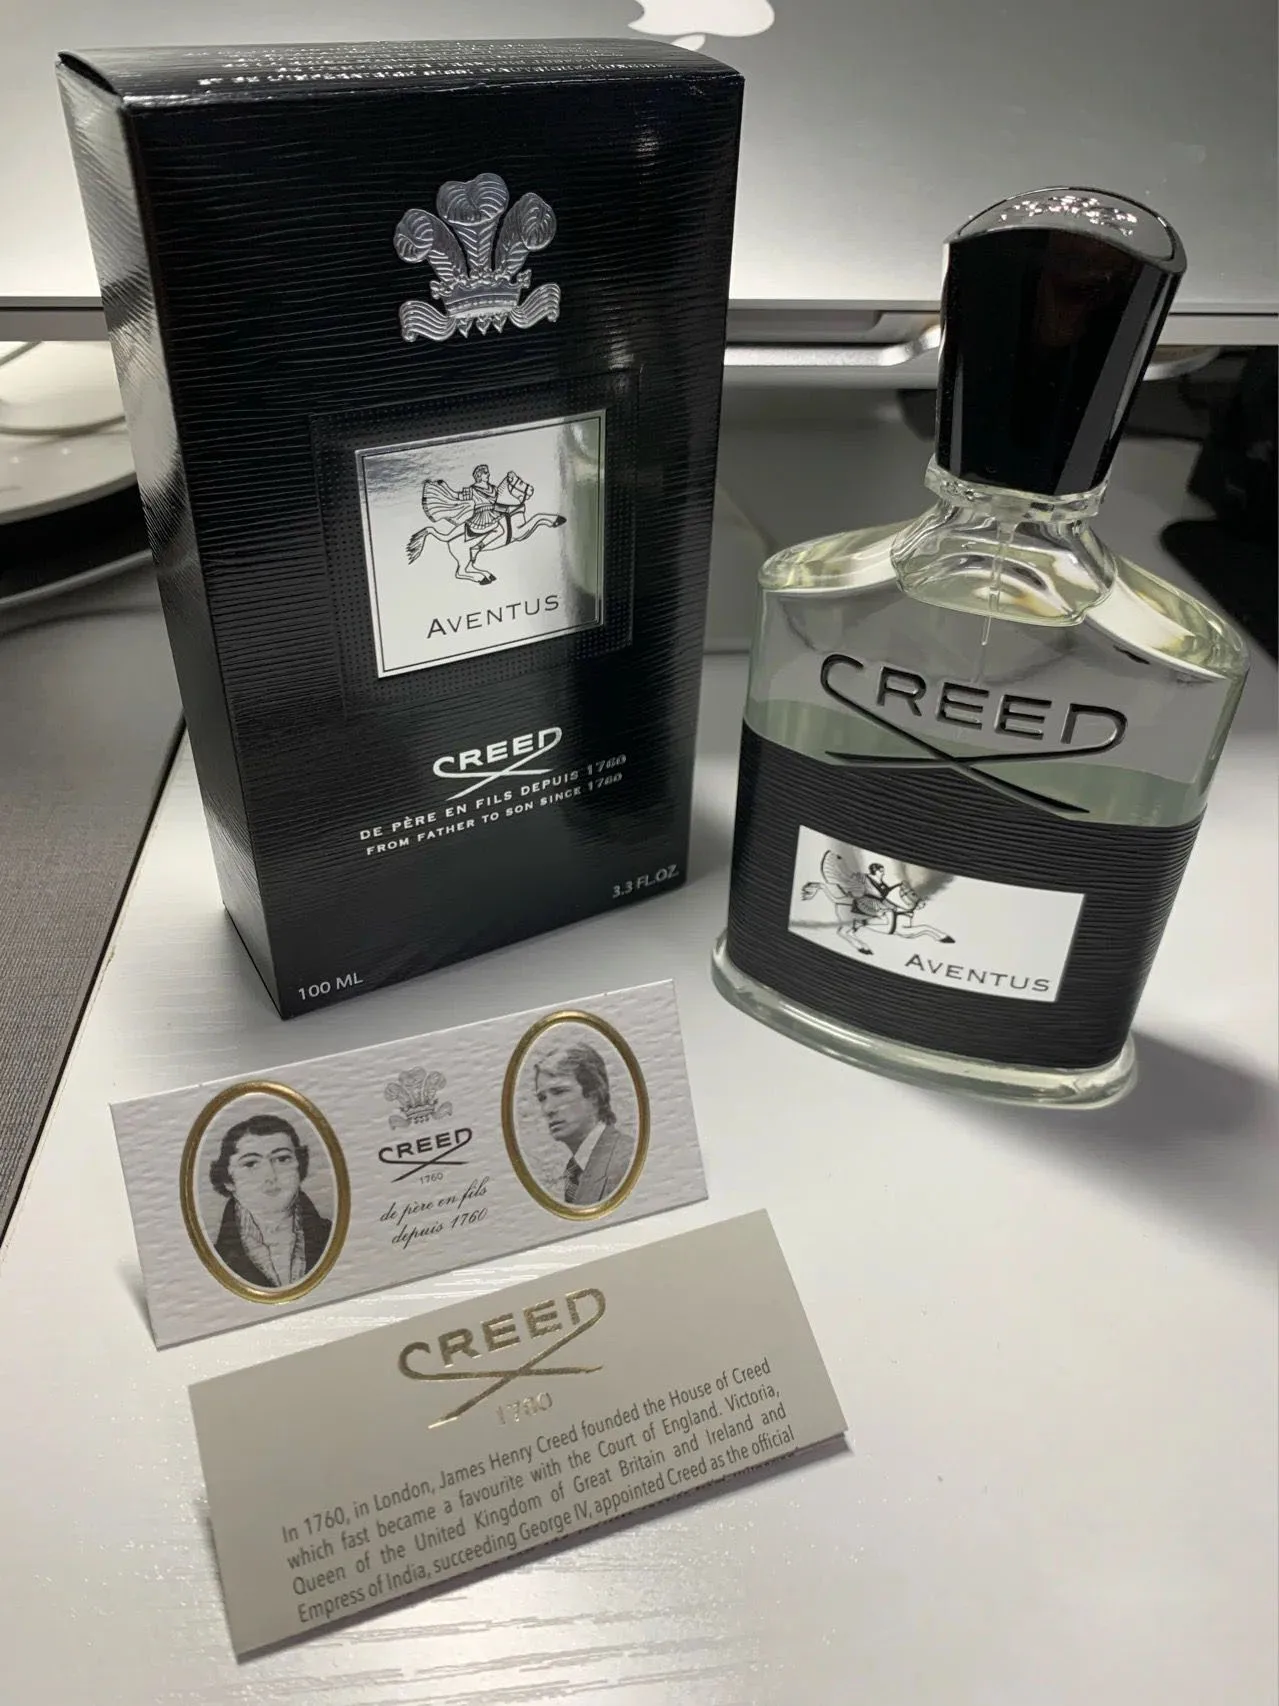 

Imported Men creed aventus perfume for women men long lasting Smell parfum female for women fragrances fresh deodorant